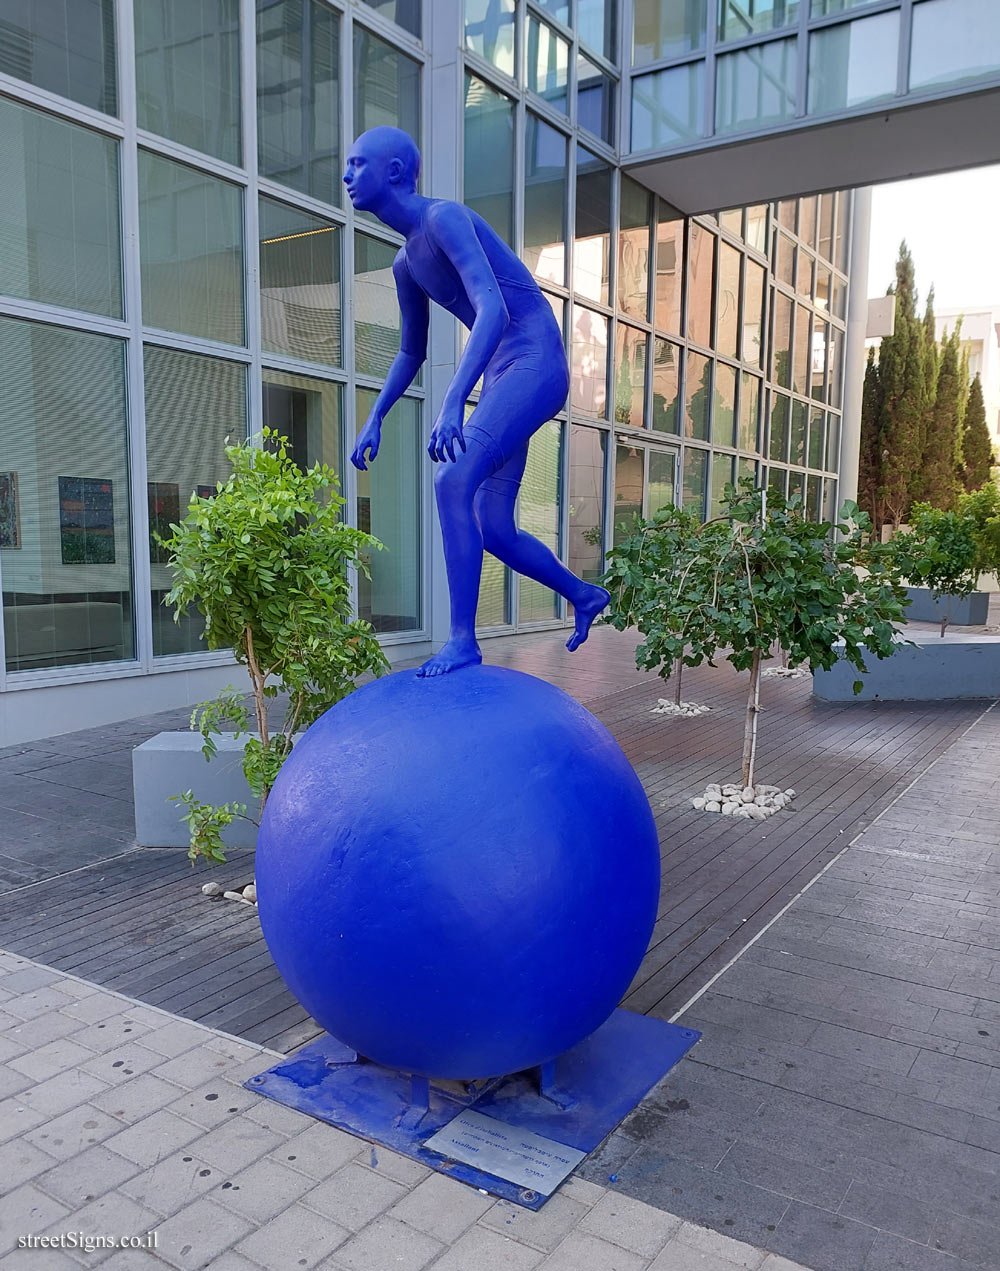 Tel Aviv - "The Assailant" outdoor sculpture by Ofra Zimbalsta - Frishman St 46, Tel Aviv-Yafo, Israel